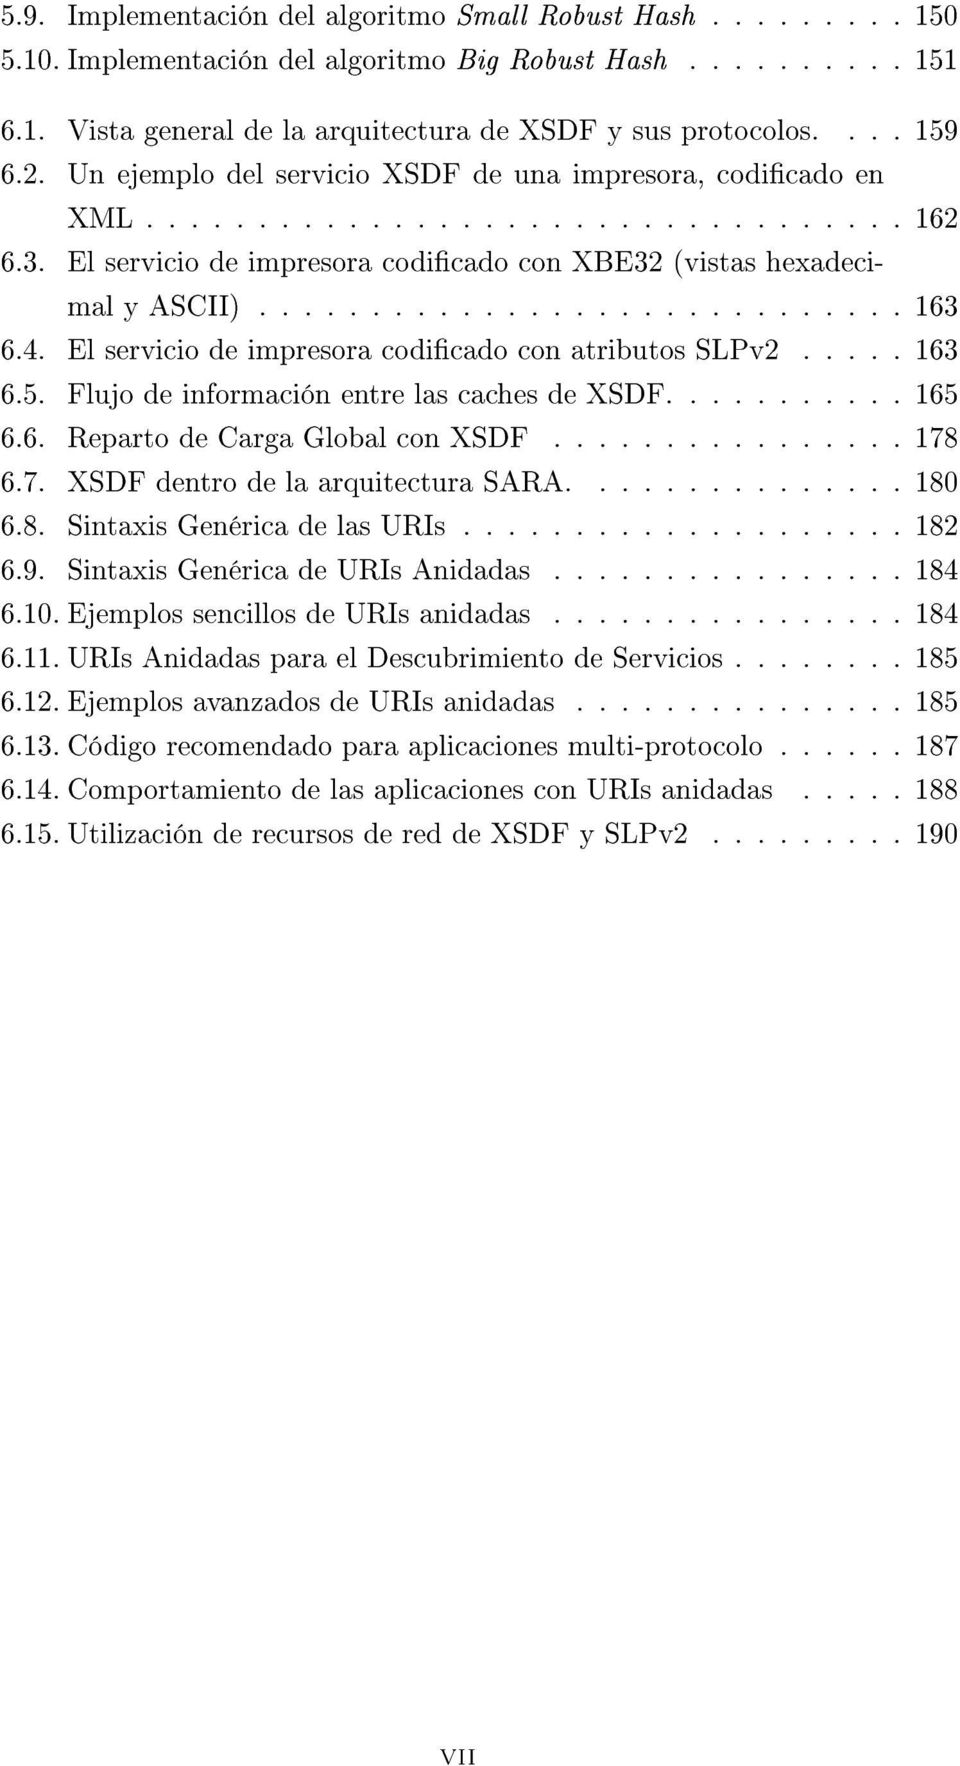 4. El servicio de impresora codicado con atributos SLPv2..... 163 6.5. Flujo de información entre las caches de XSDF........... 165 6.6. Reparto de Carga Global con XSDF................ 178